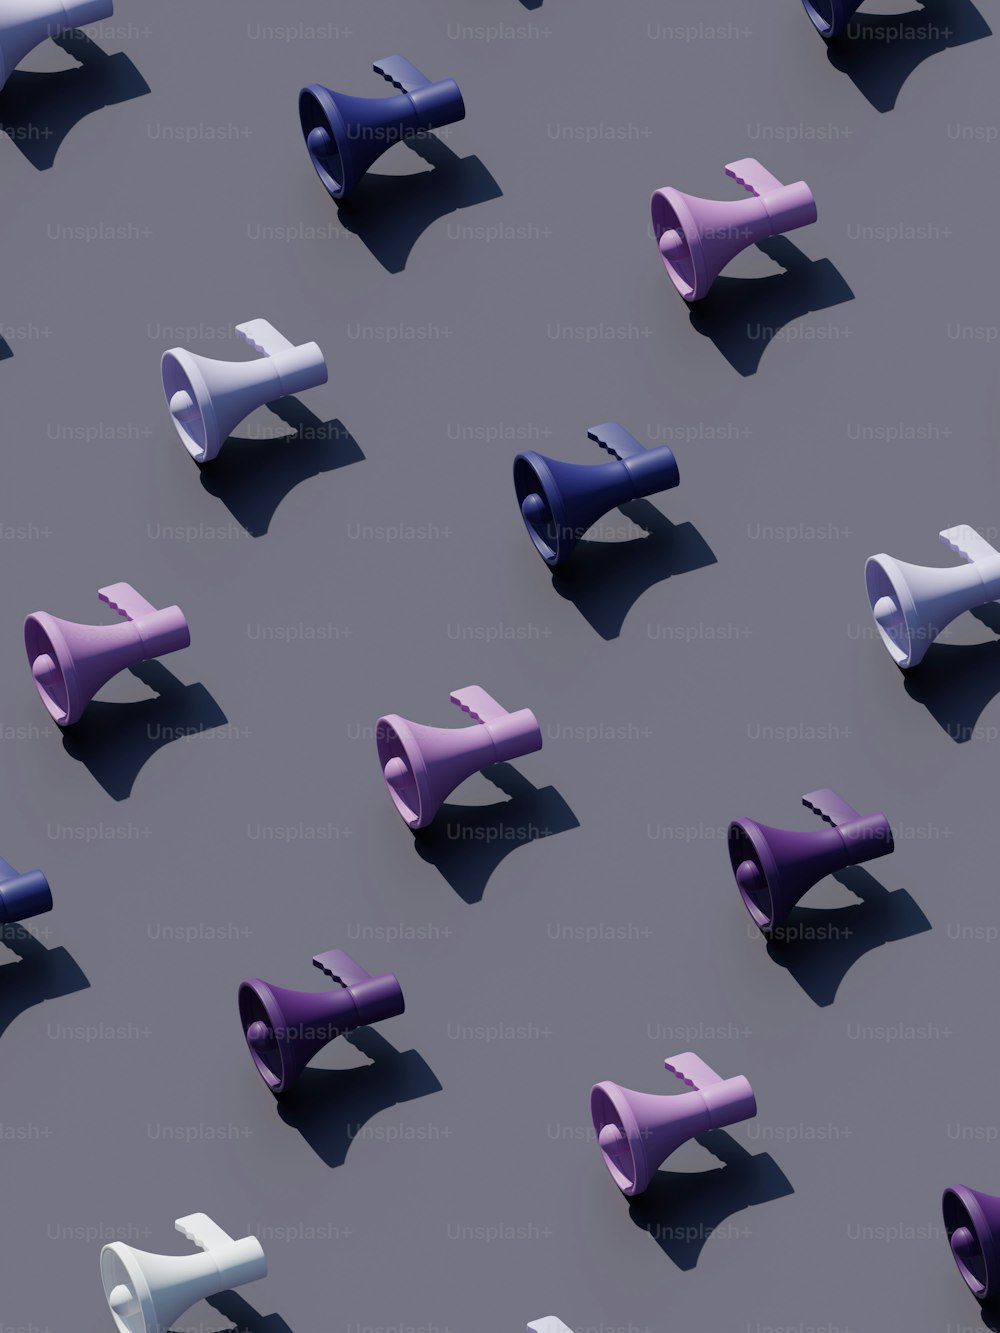 Un gruppo di oggetti viola e bianchi su una superficie grigia